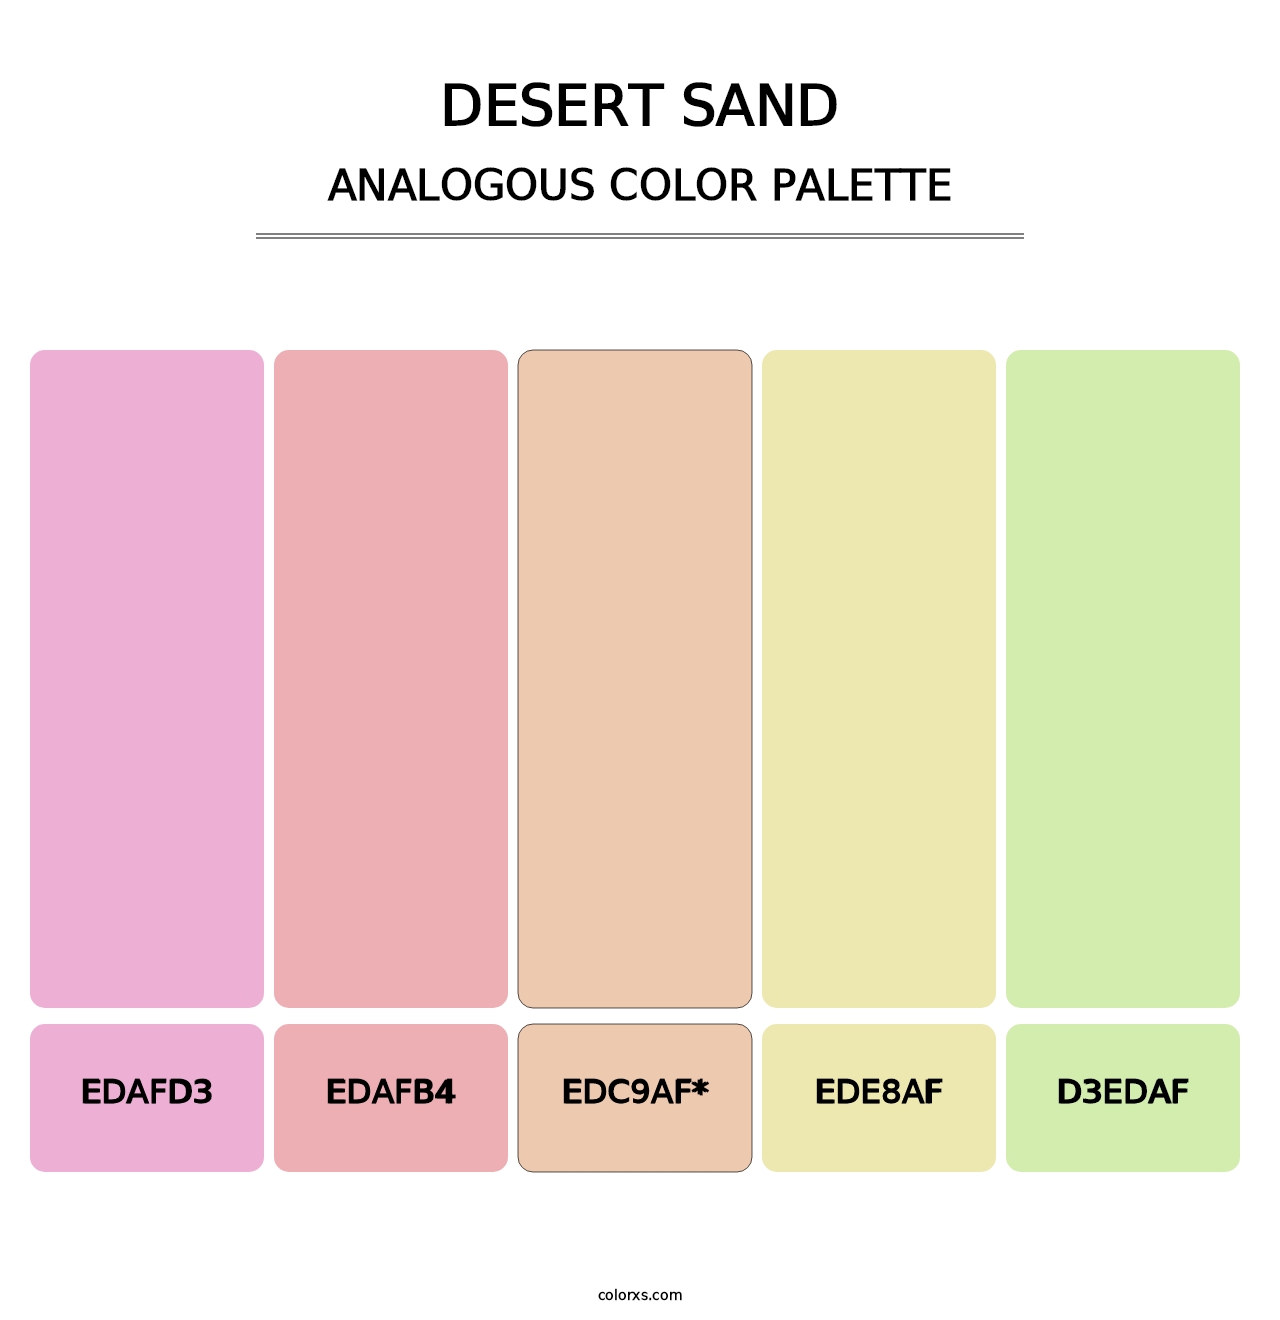 Desert Sand - Analogous Color Palette